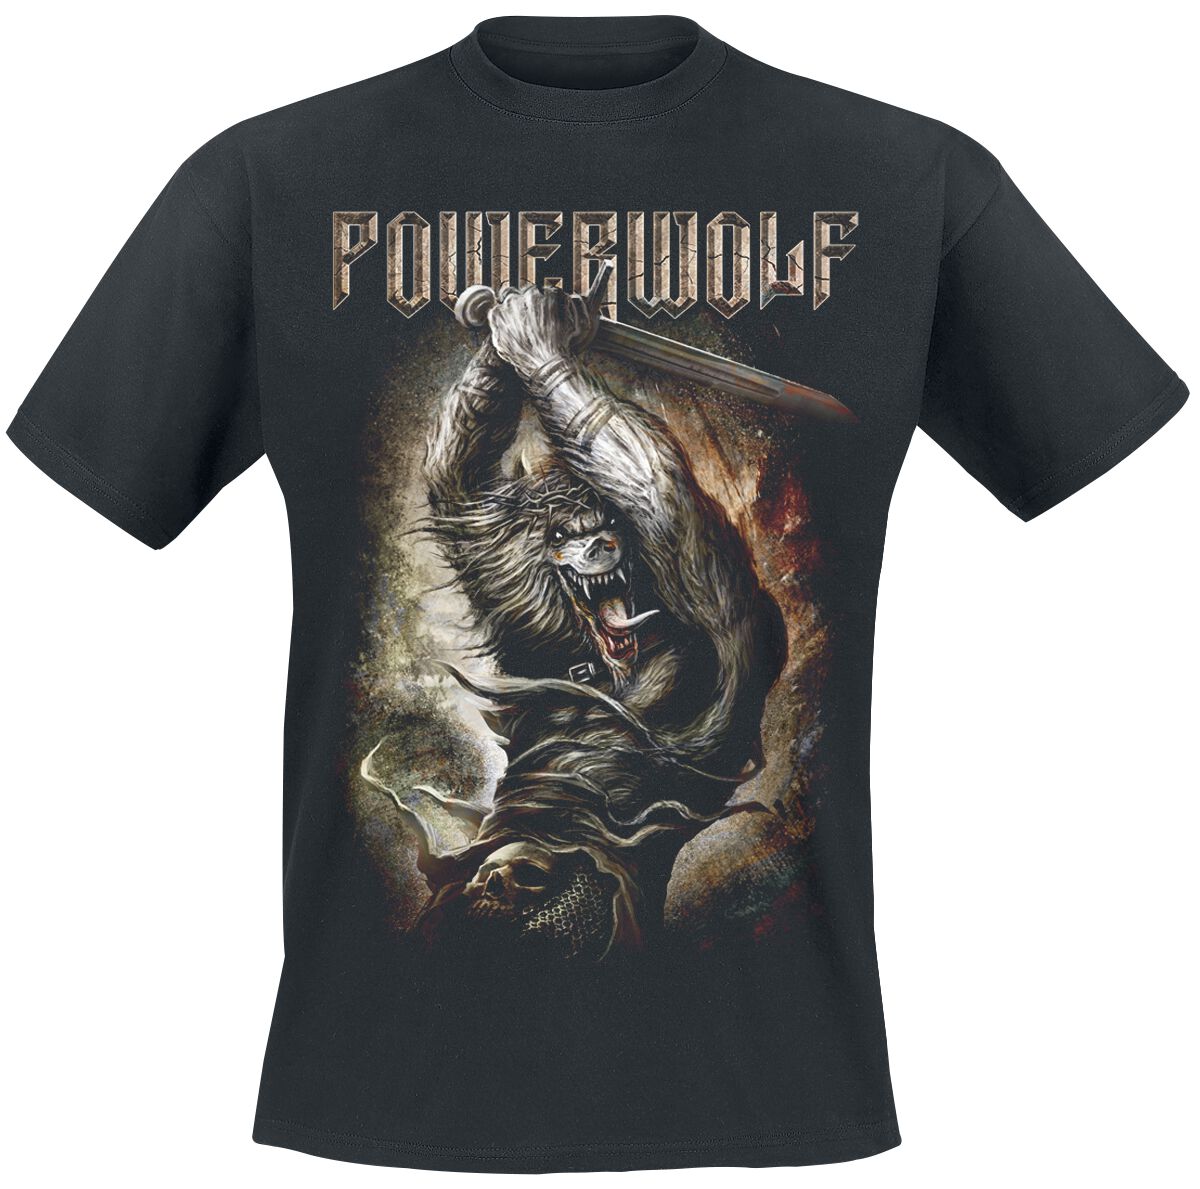 Powerwolf T-Shirt - Wolves Of War - S bis 5XL - für Männer - Größe 5XL - schwarz  - Lizenziertes Merchandise!